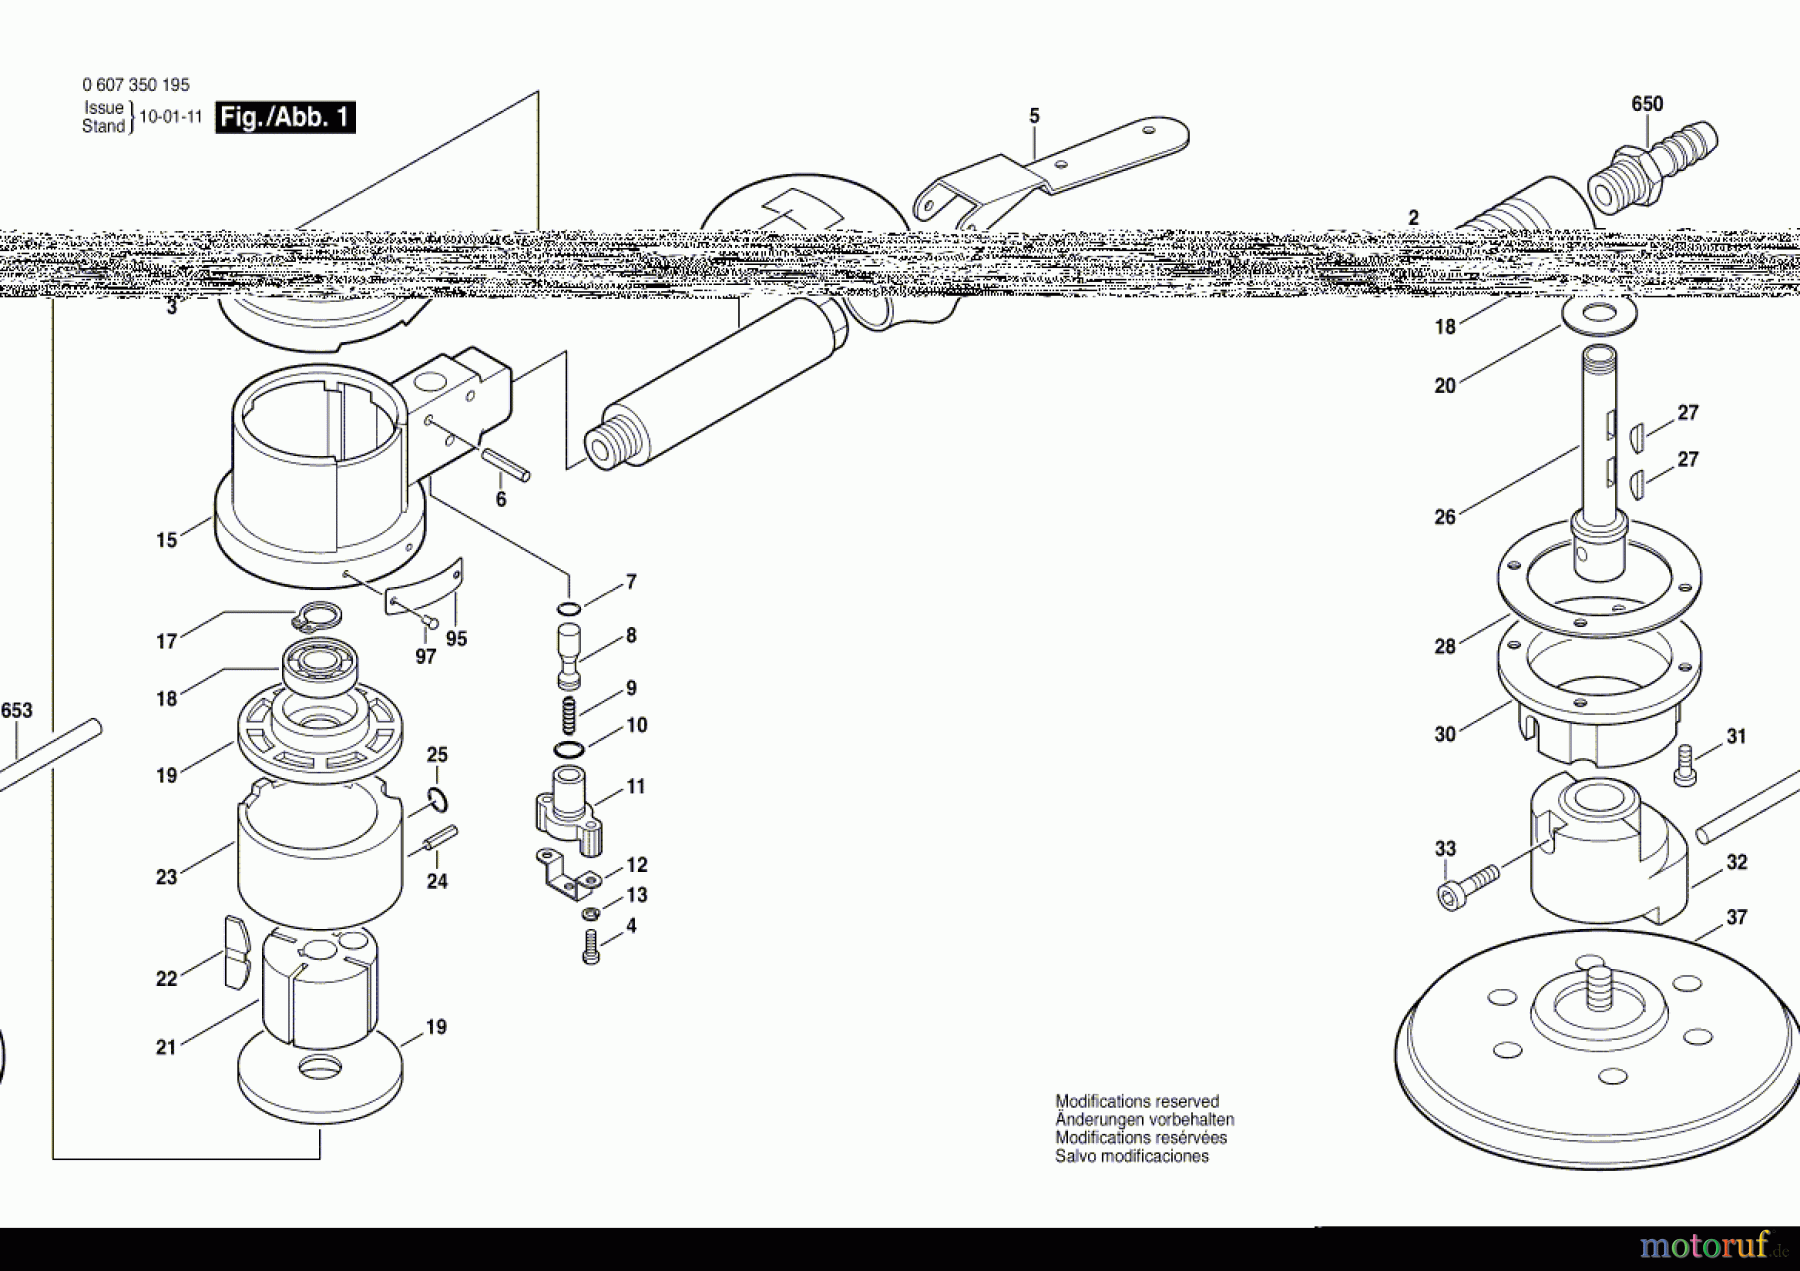  Bosch Werkzeug Pw-Exzenterschleifer ---- Seite 1